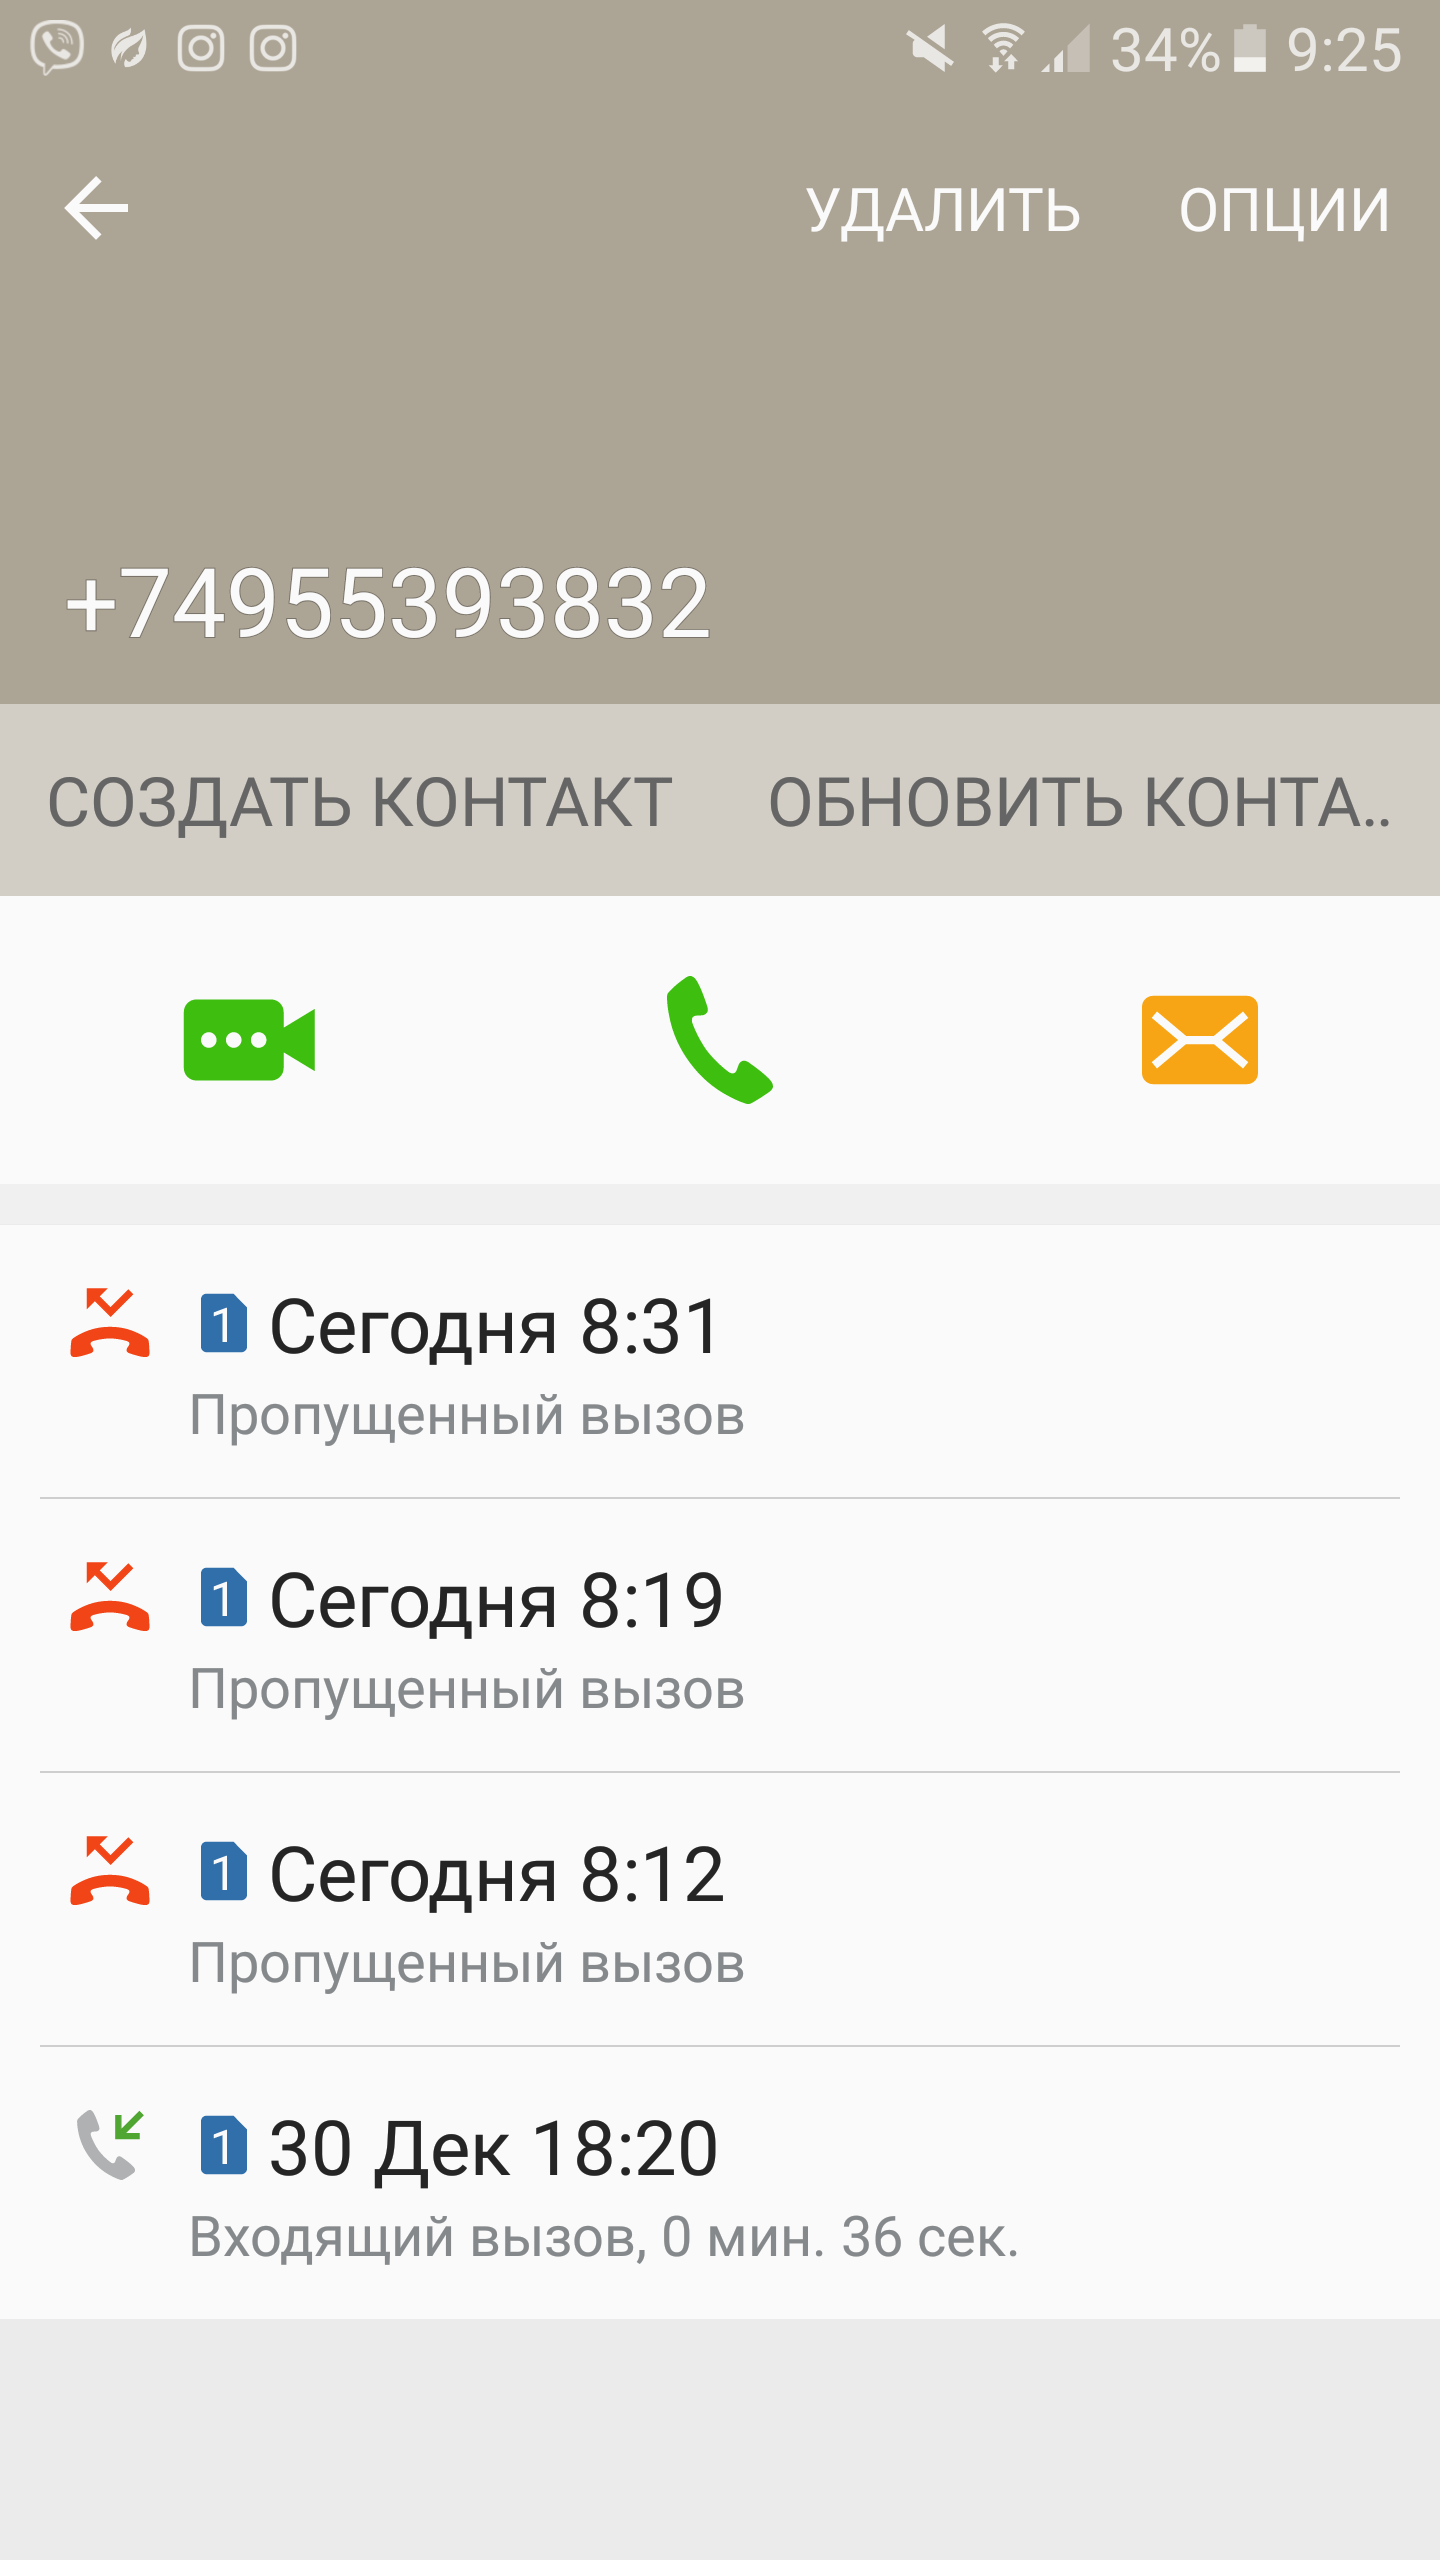 Саяногорск Инфо - screenshot_20170112-092530.png, Скачано: 296